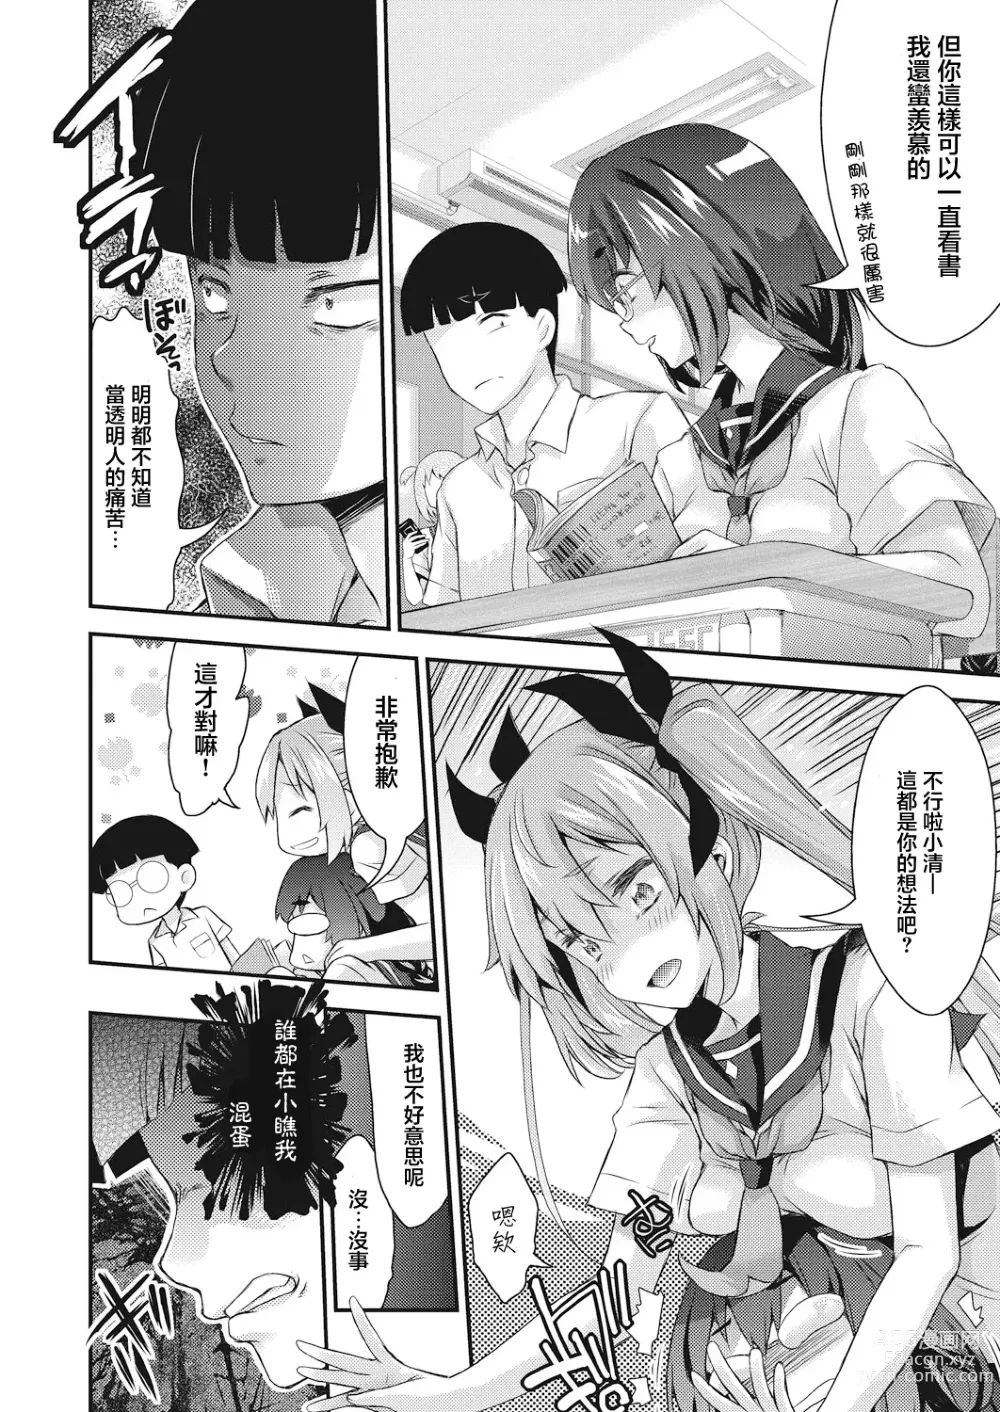 Page 5 of manga BOCCHI NO ZAMMA